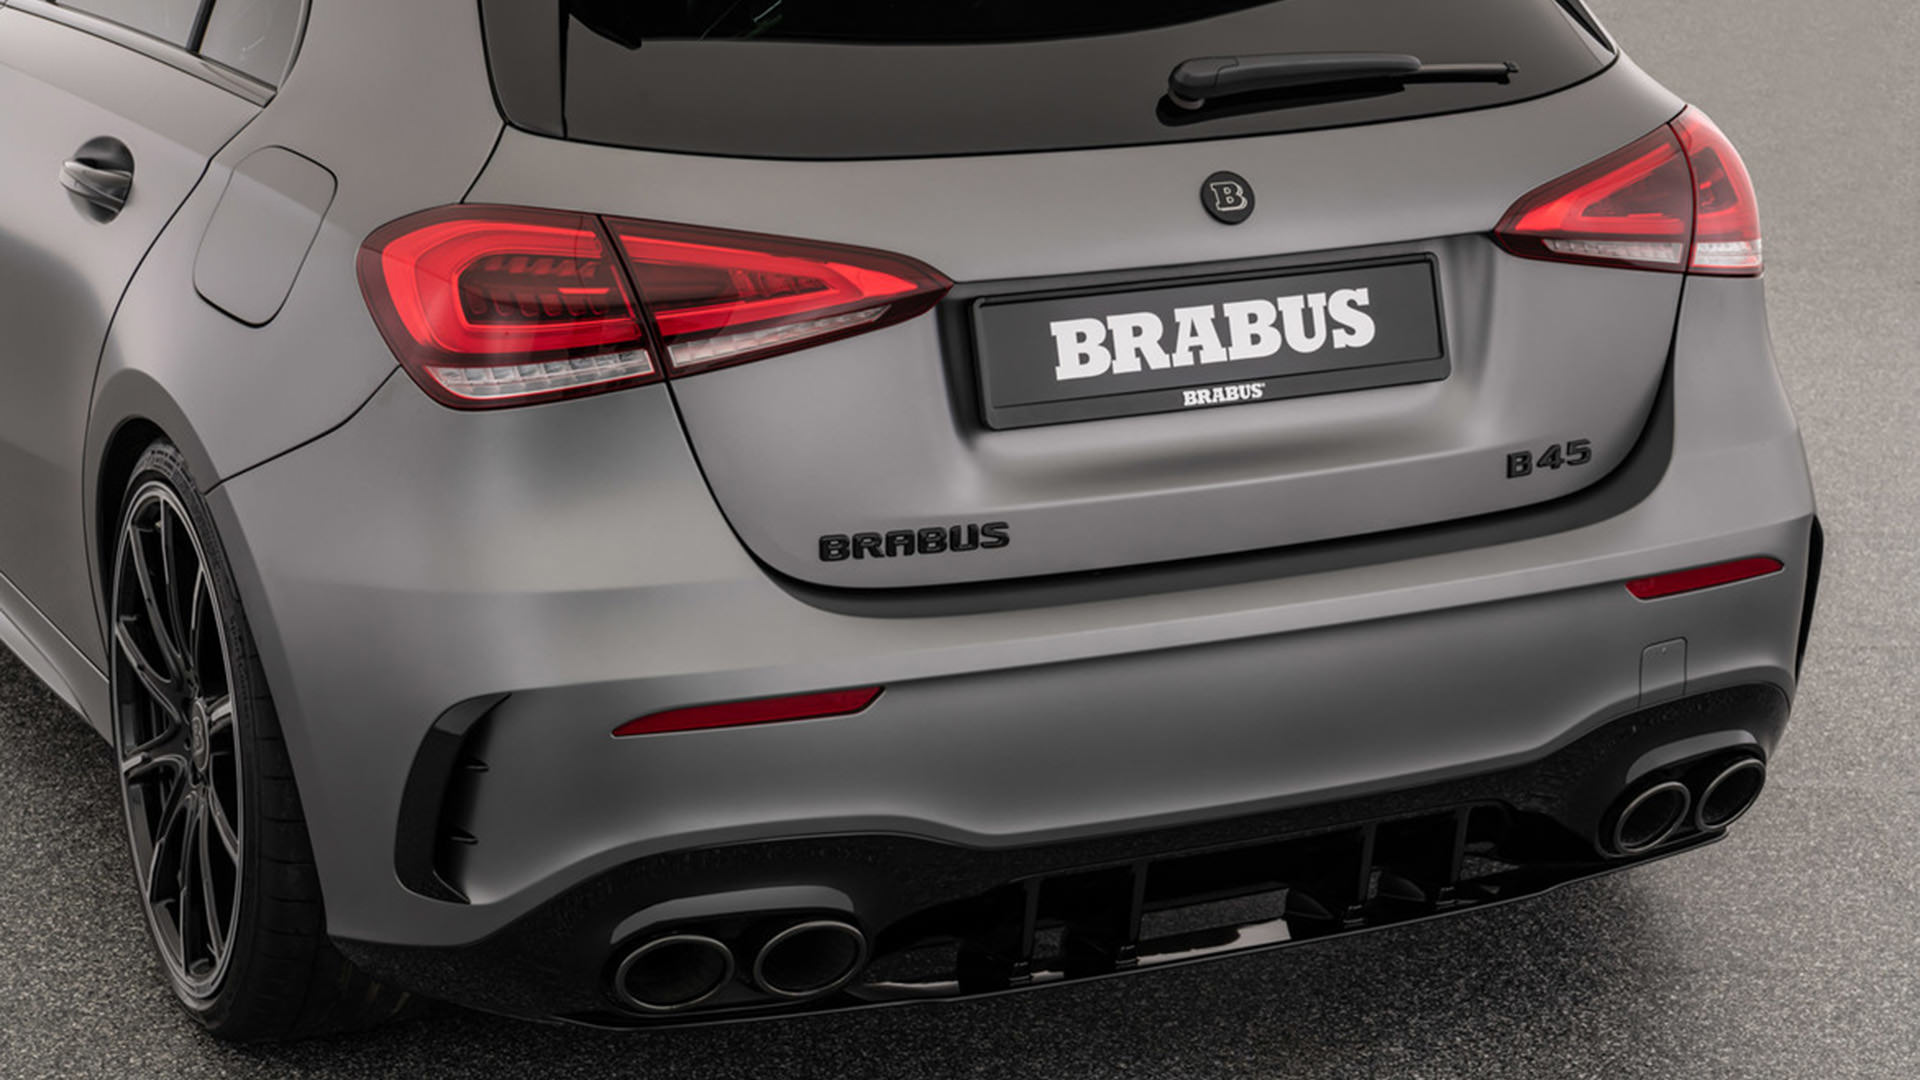 خروجی اگزوز مرسدس آ ام گ تیونینگ برابوس / Brabus Mercedes-AMG A45 S نقره ای رنگ